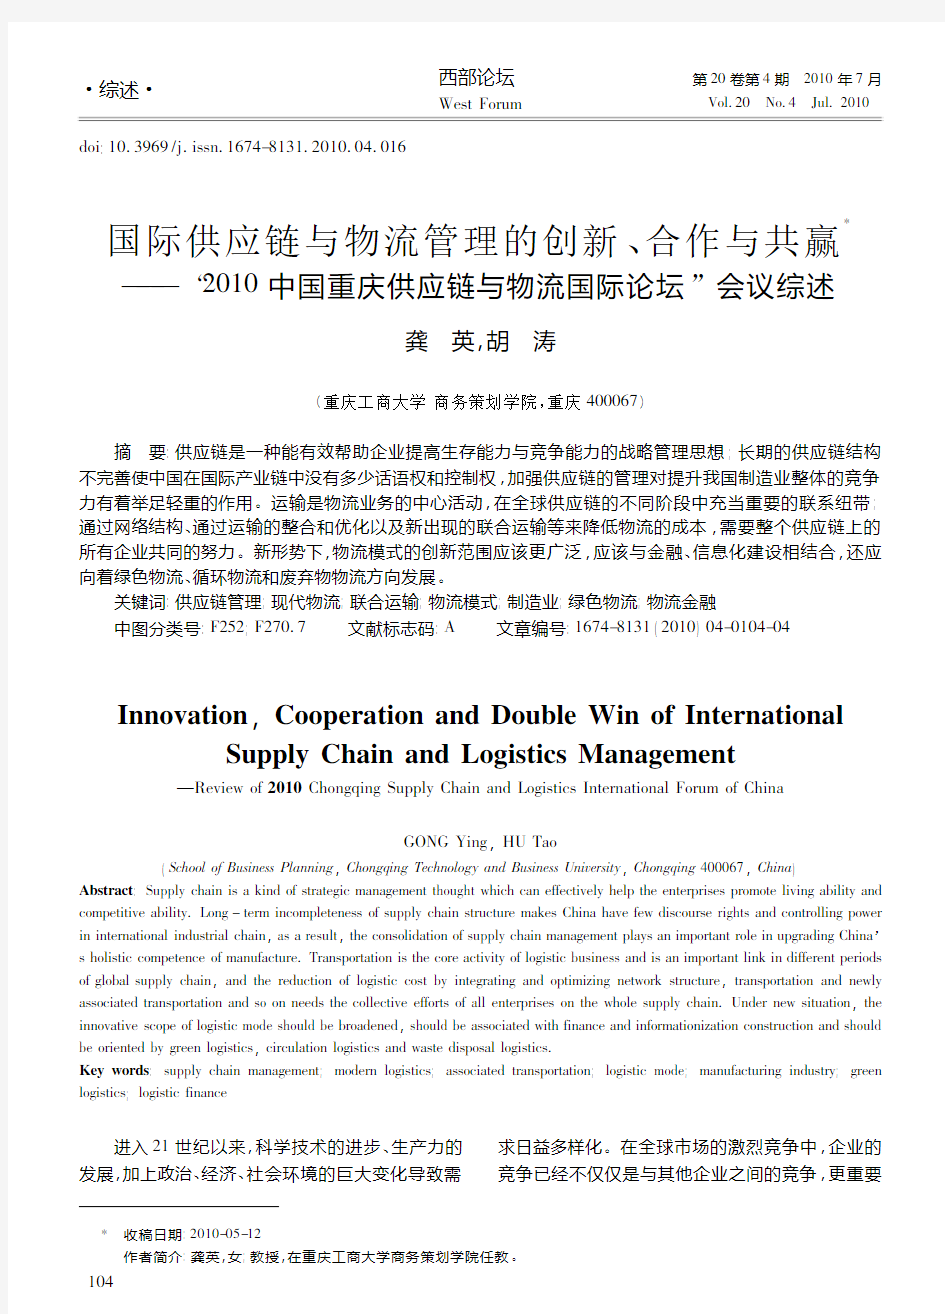 国际供应链与物流管理的创新_合作与共赢_2_省略_10中国重庆供应链与物流国际论